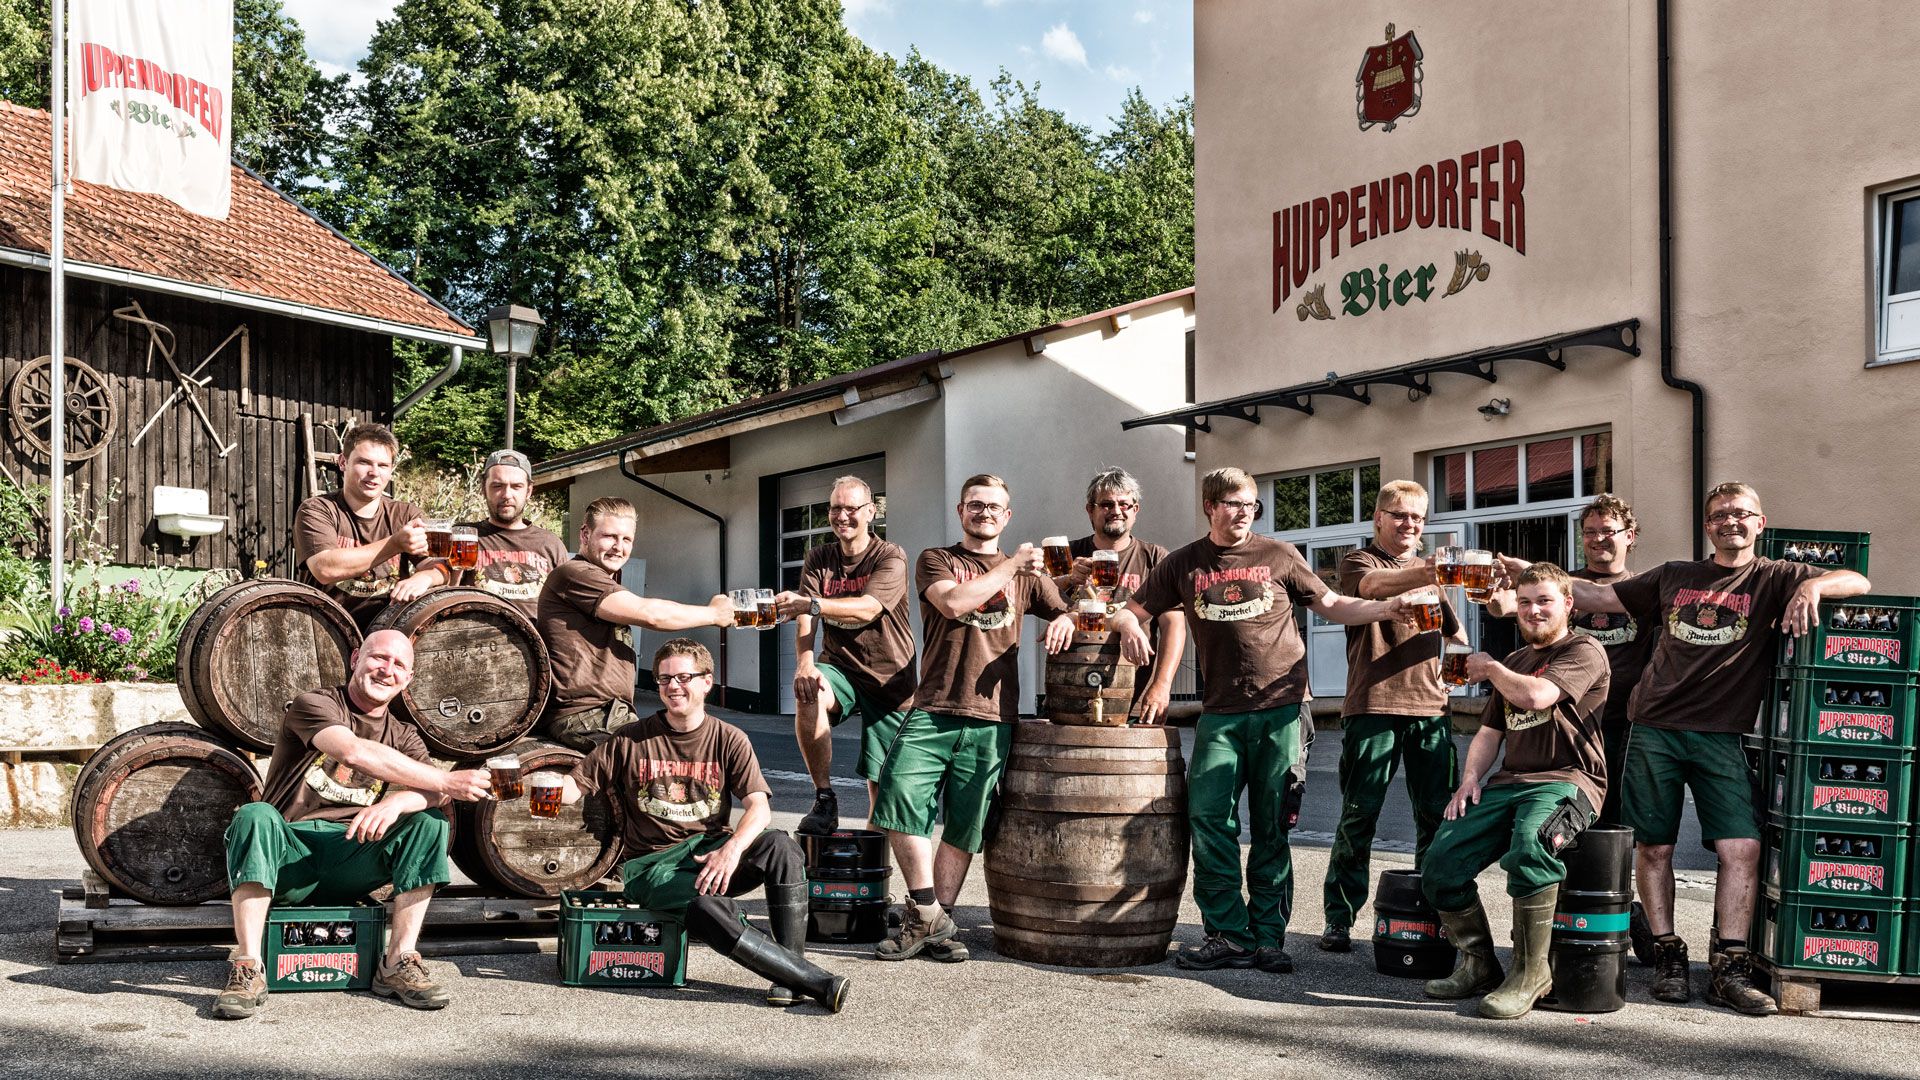 Huppendorfer Bier Team